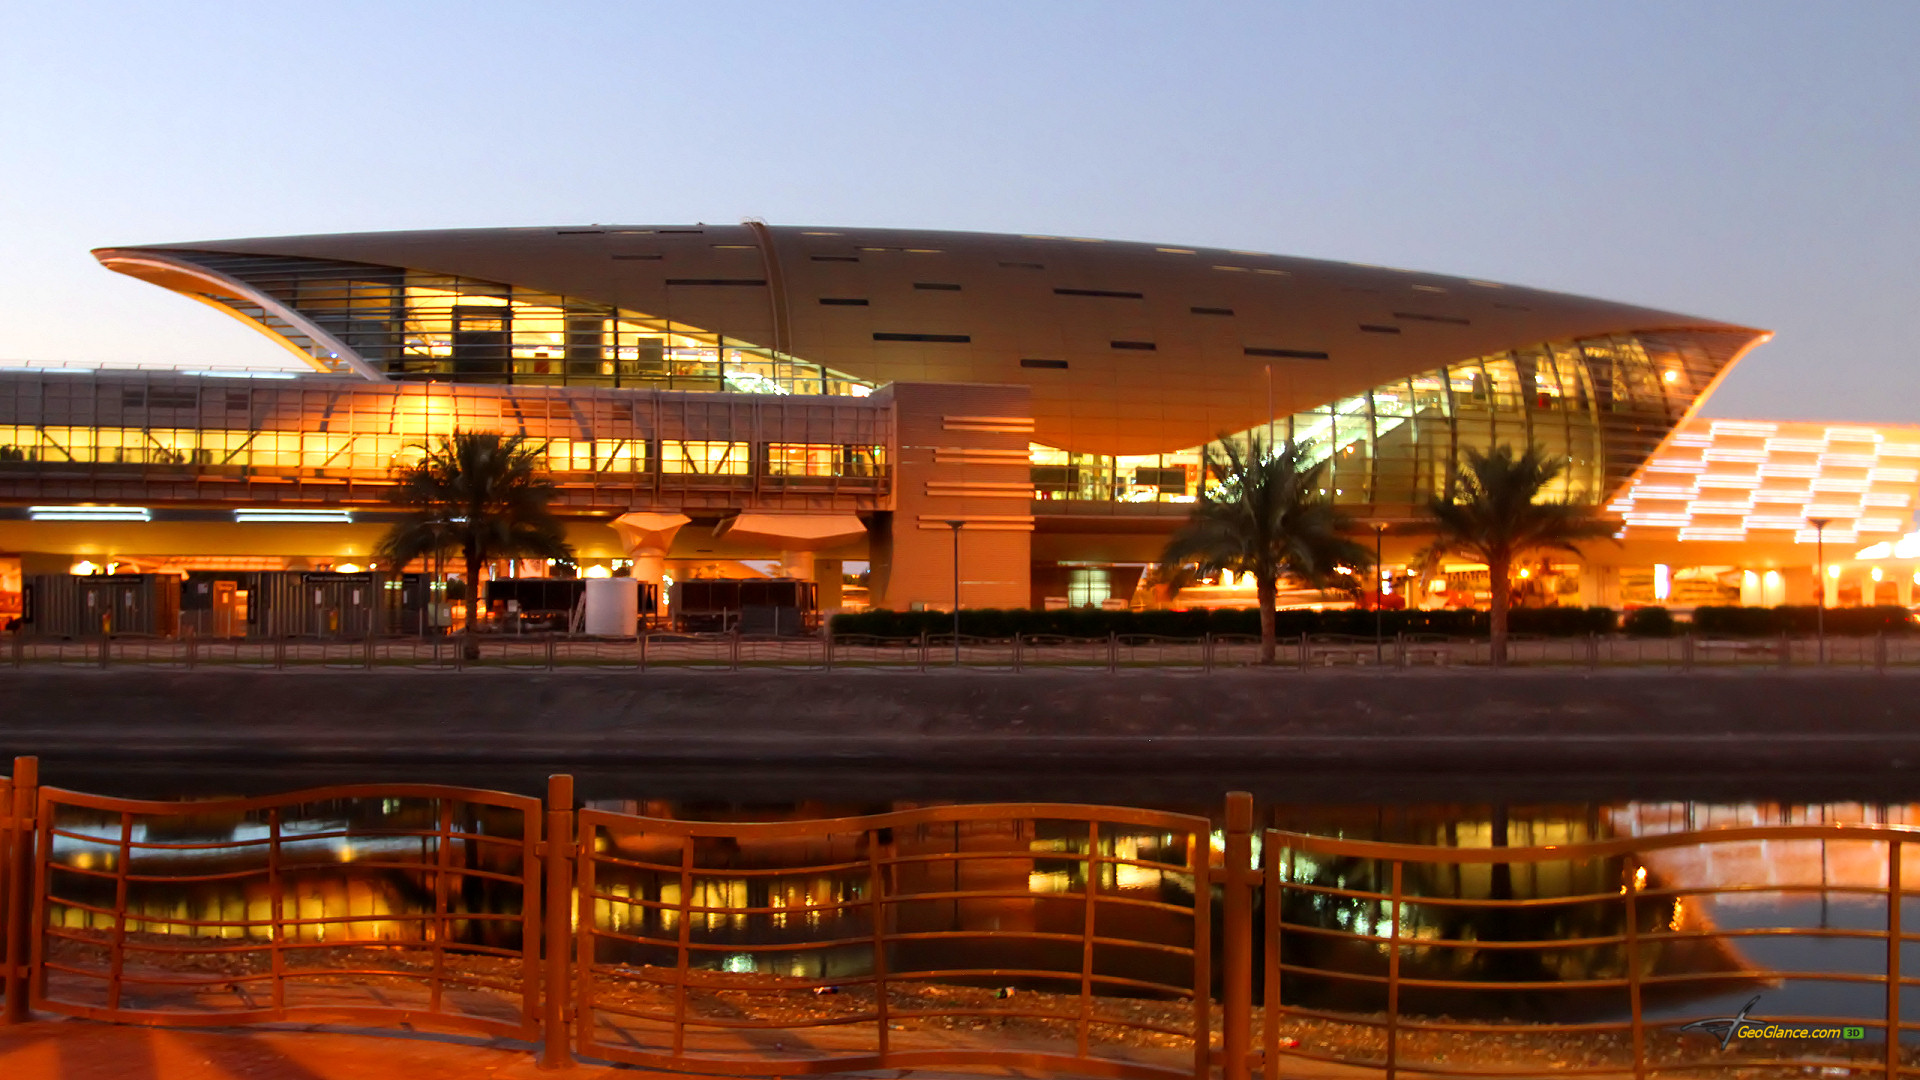 تصاویر مرکز خرید دبی مال امارات